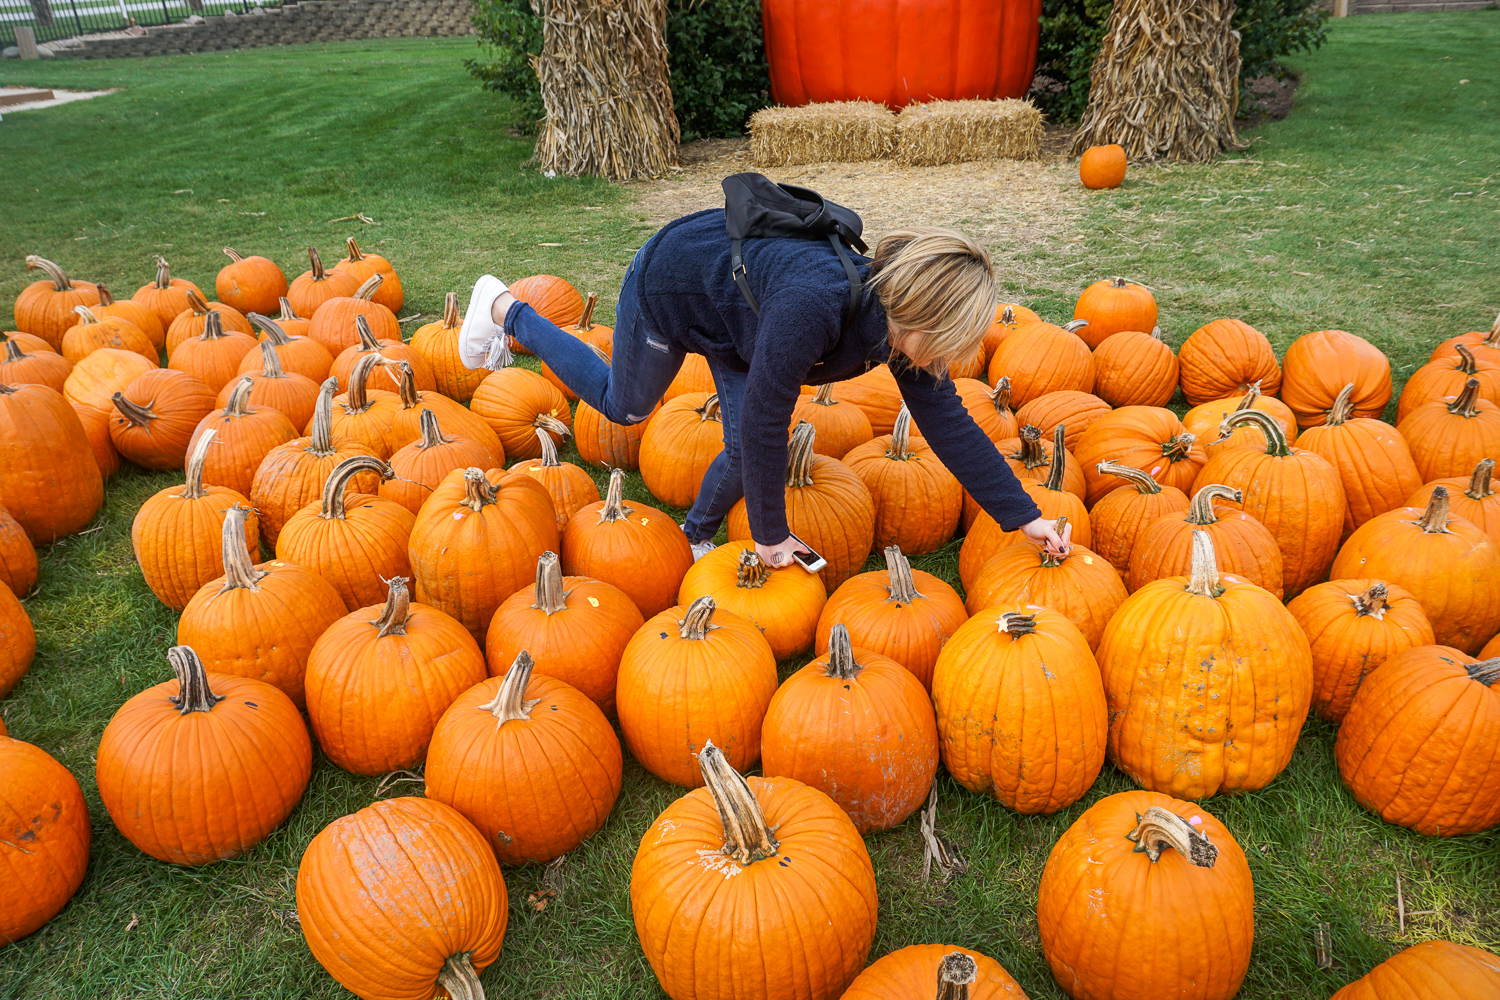 picking out a pumpkin